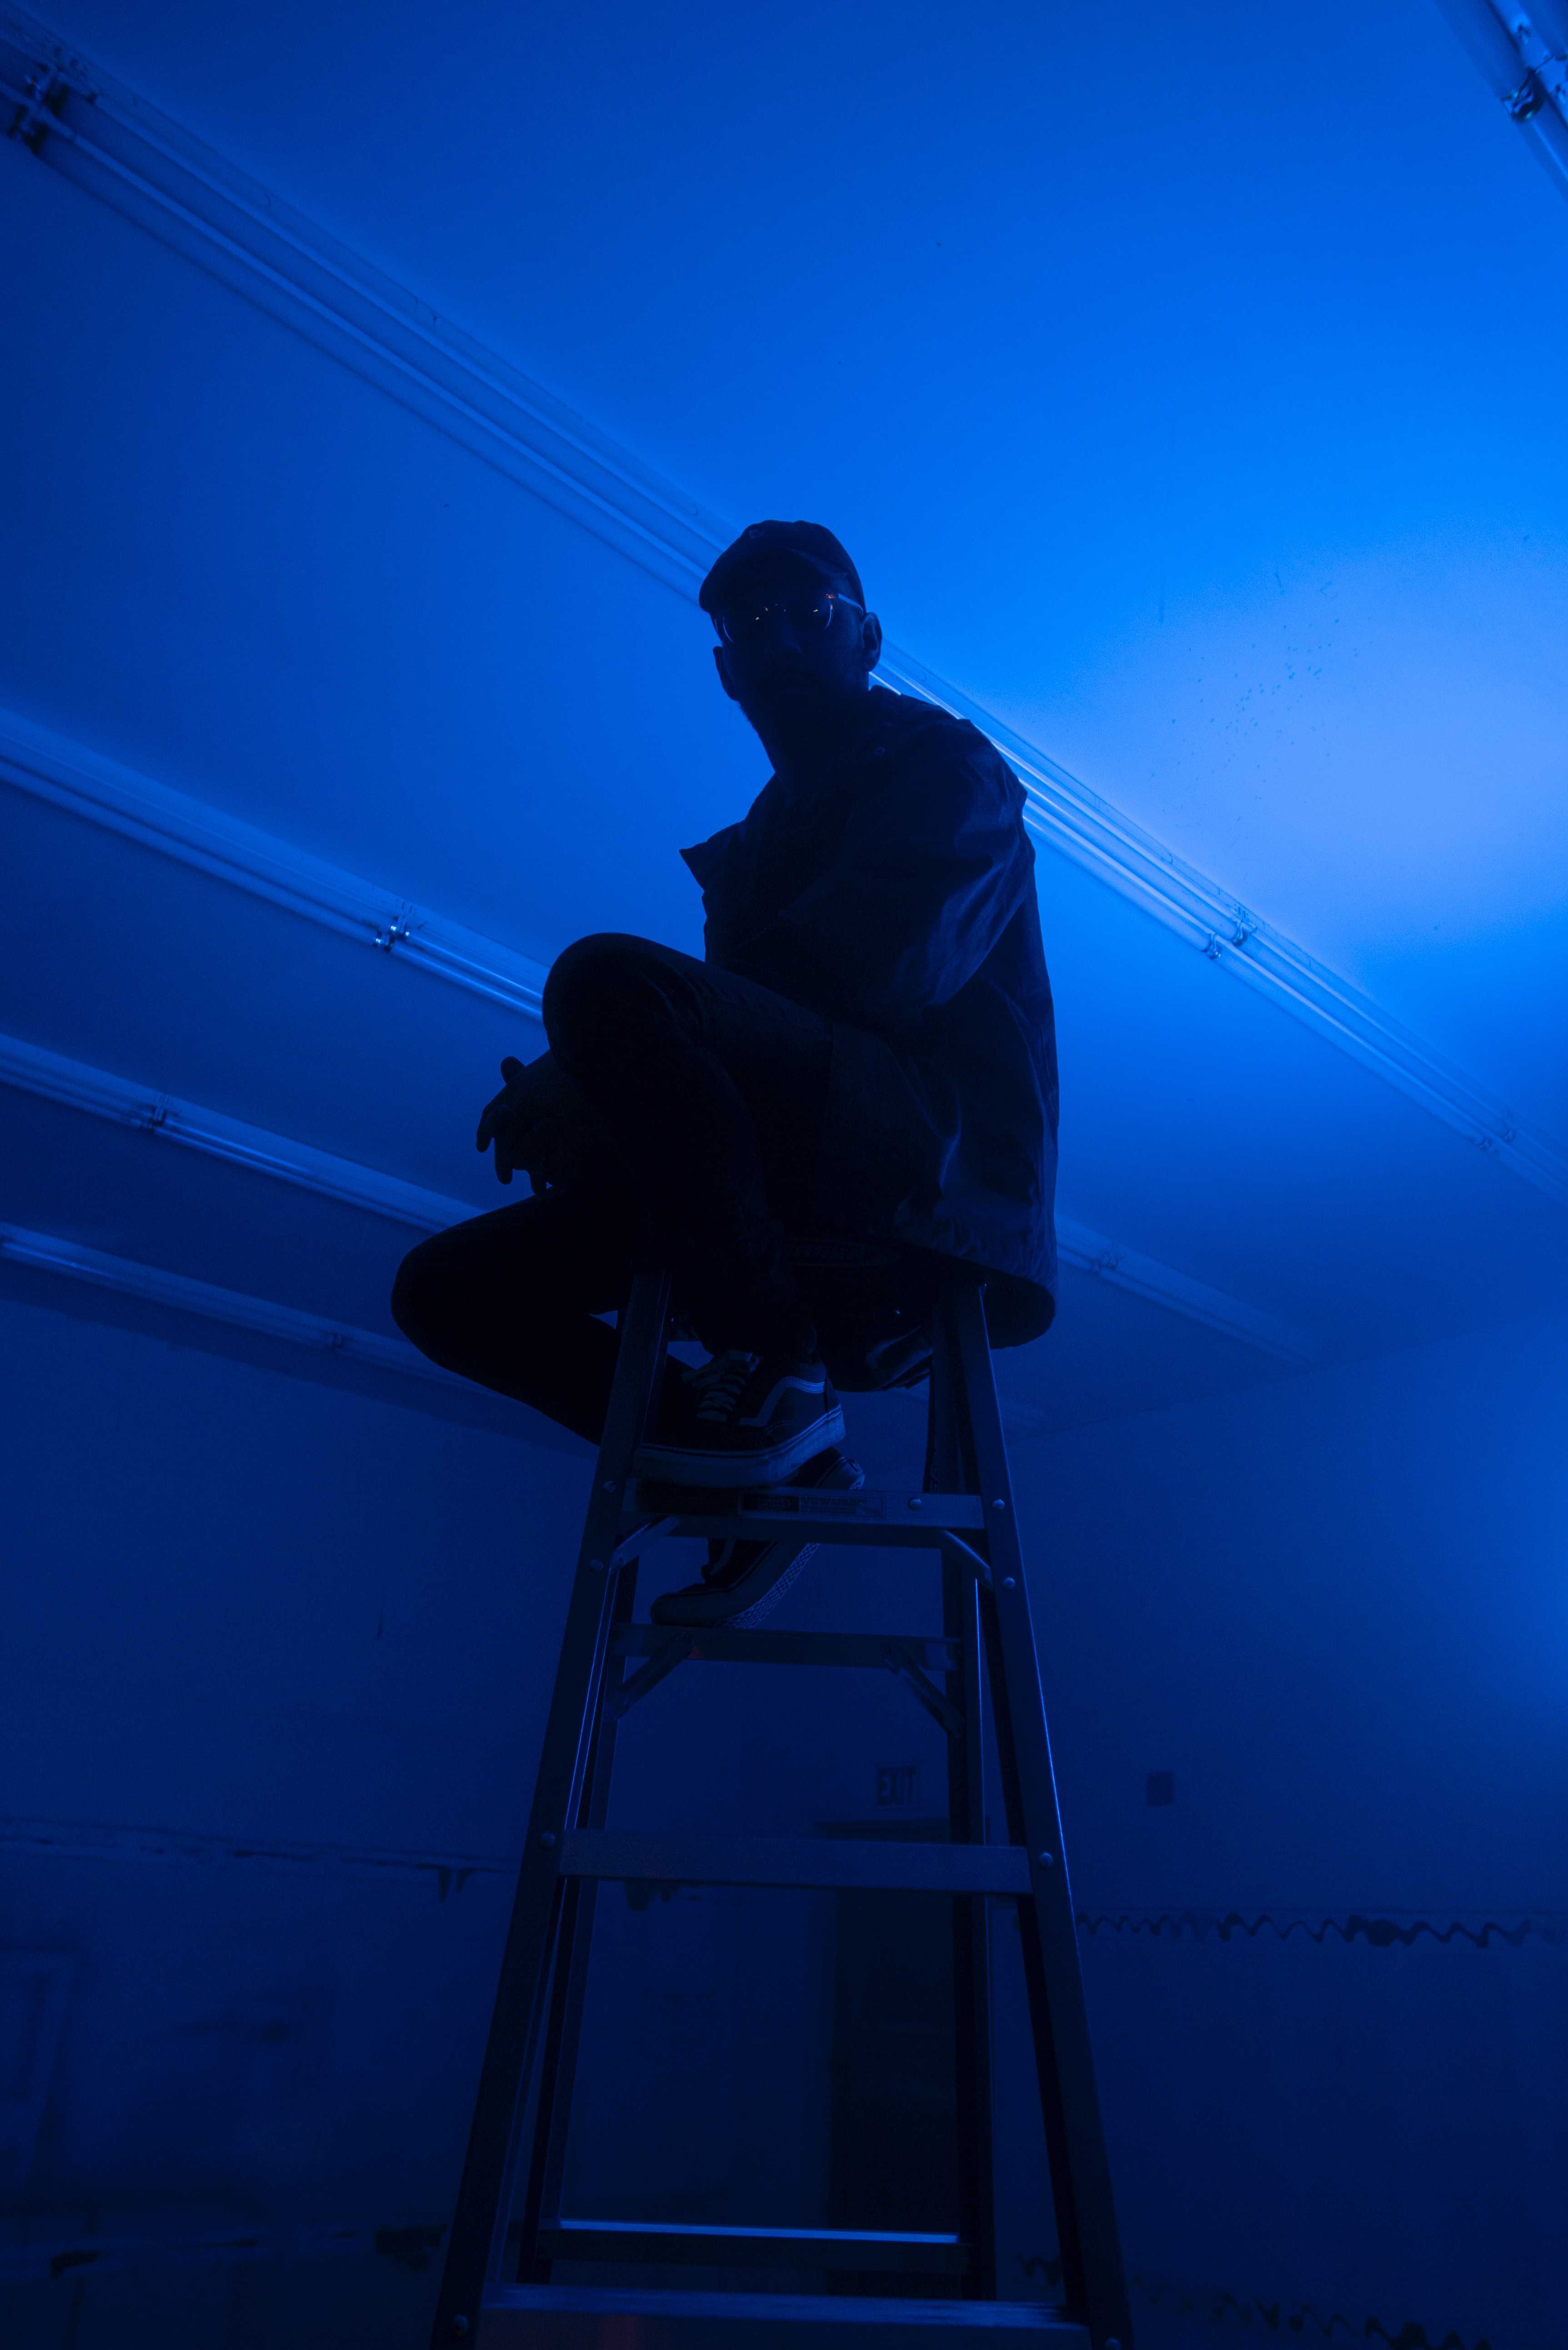 Desktop FHD blue, dark, neon, stairs, ladder, human, person